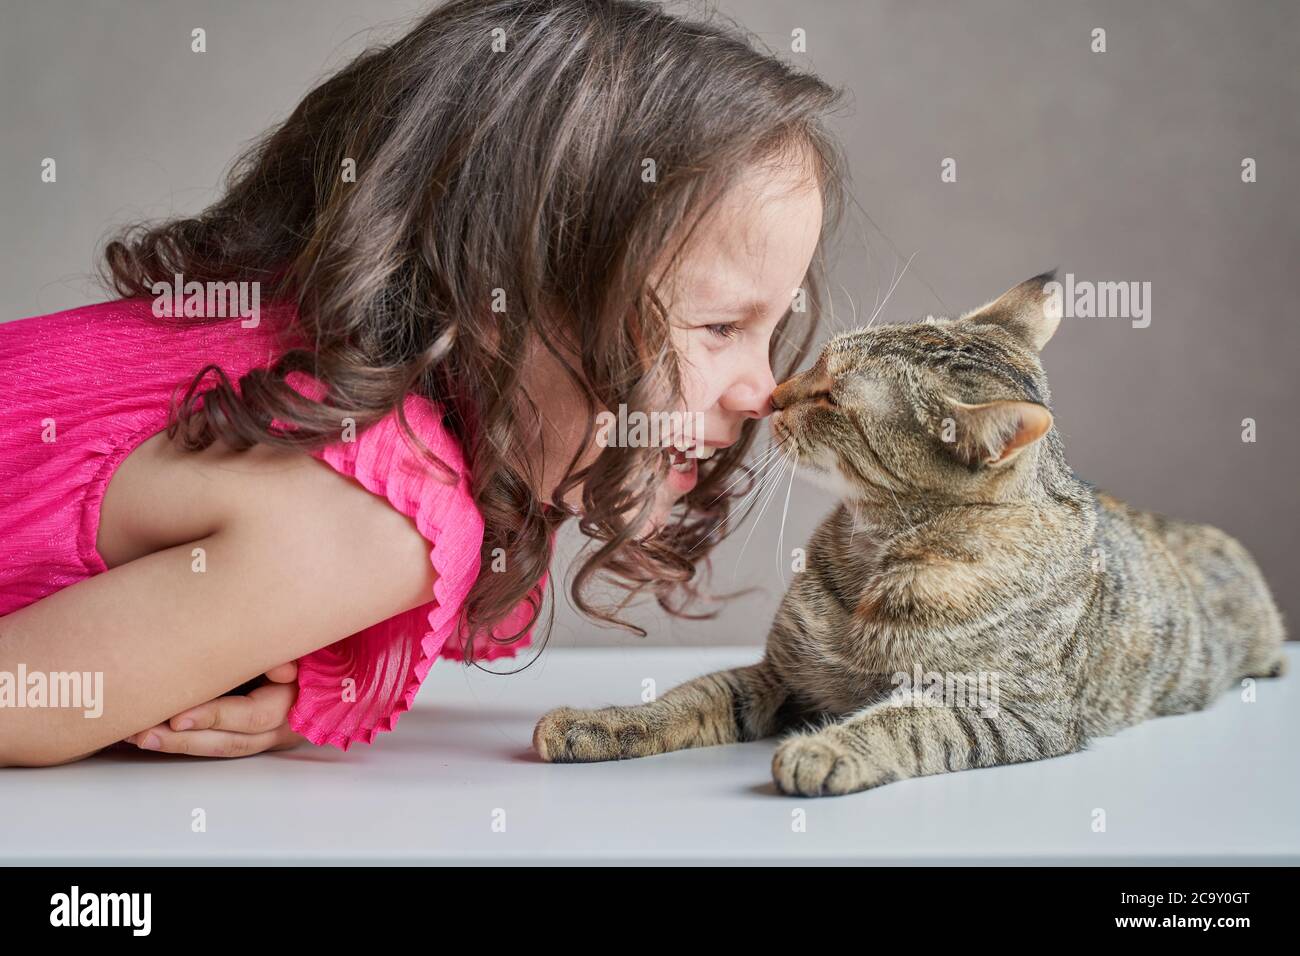 Kid girl mit Kätzchen auf dem Bett liegen, lachen, spielen mit Katze. Lifestyle Kinderfoto. Stockfoto